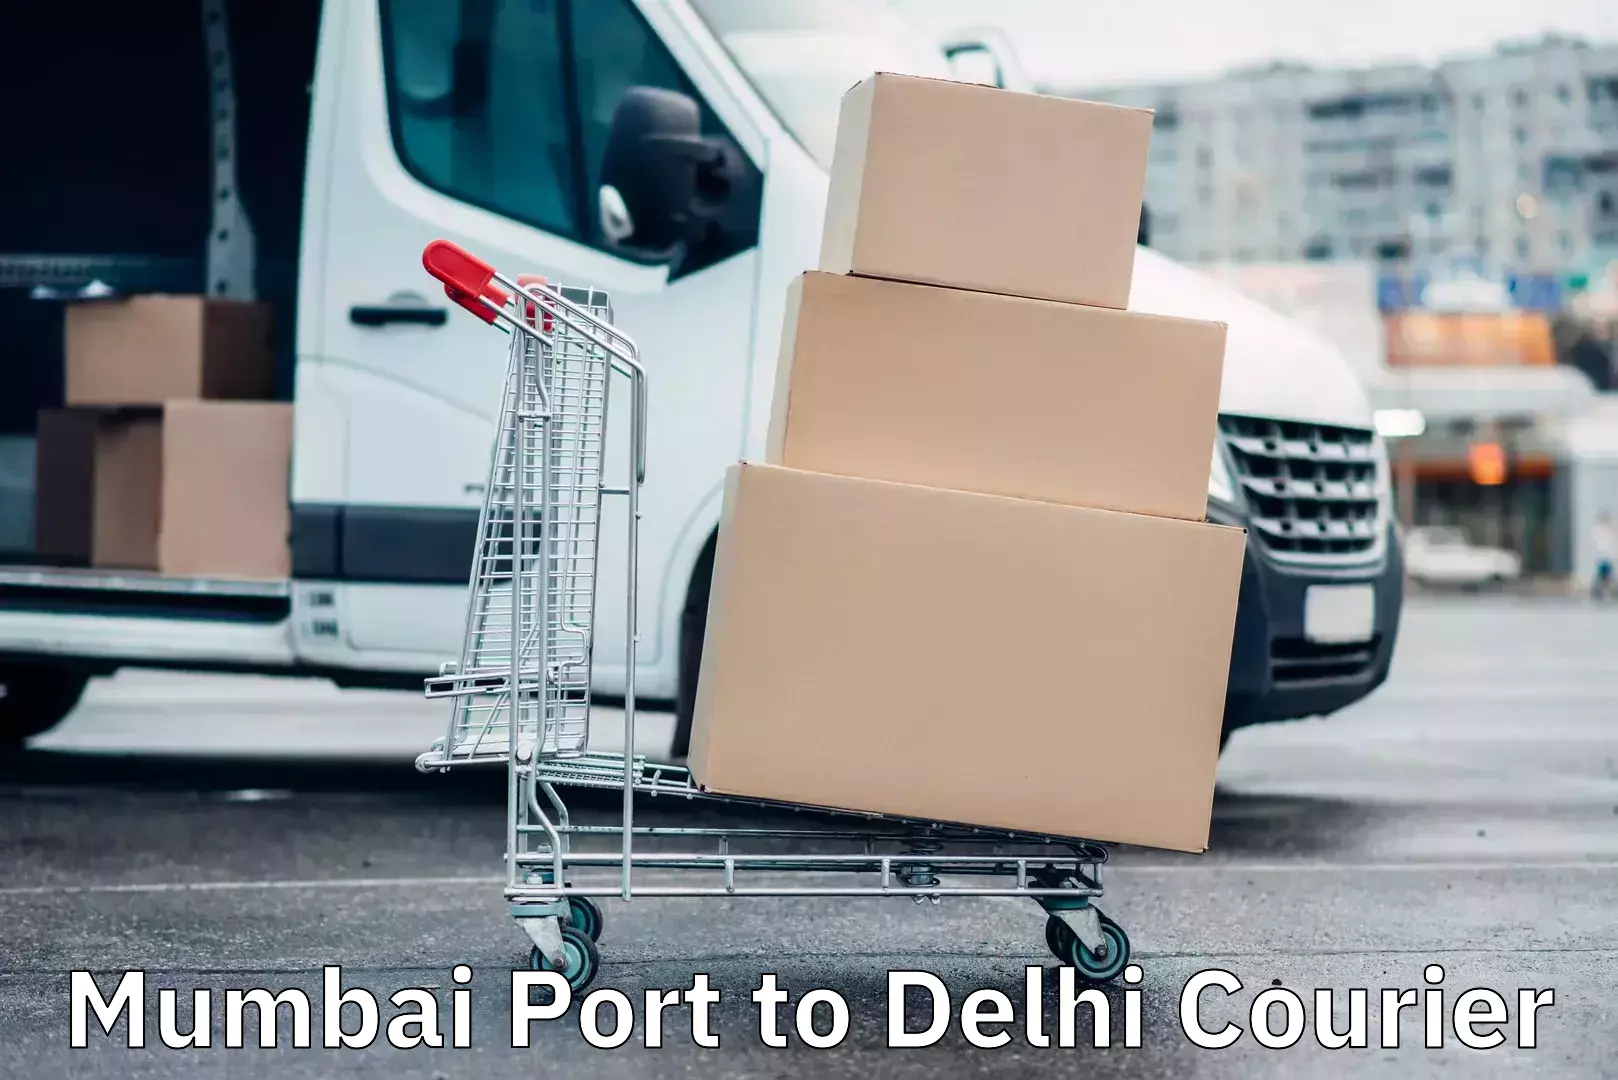 Regular parcel service Mumbai Port to Delhi